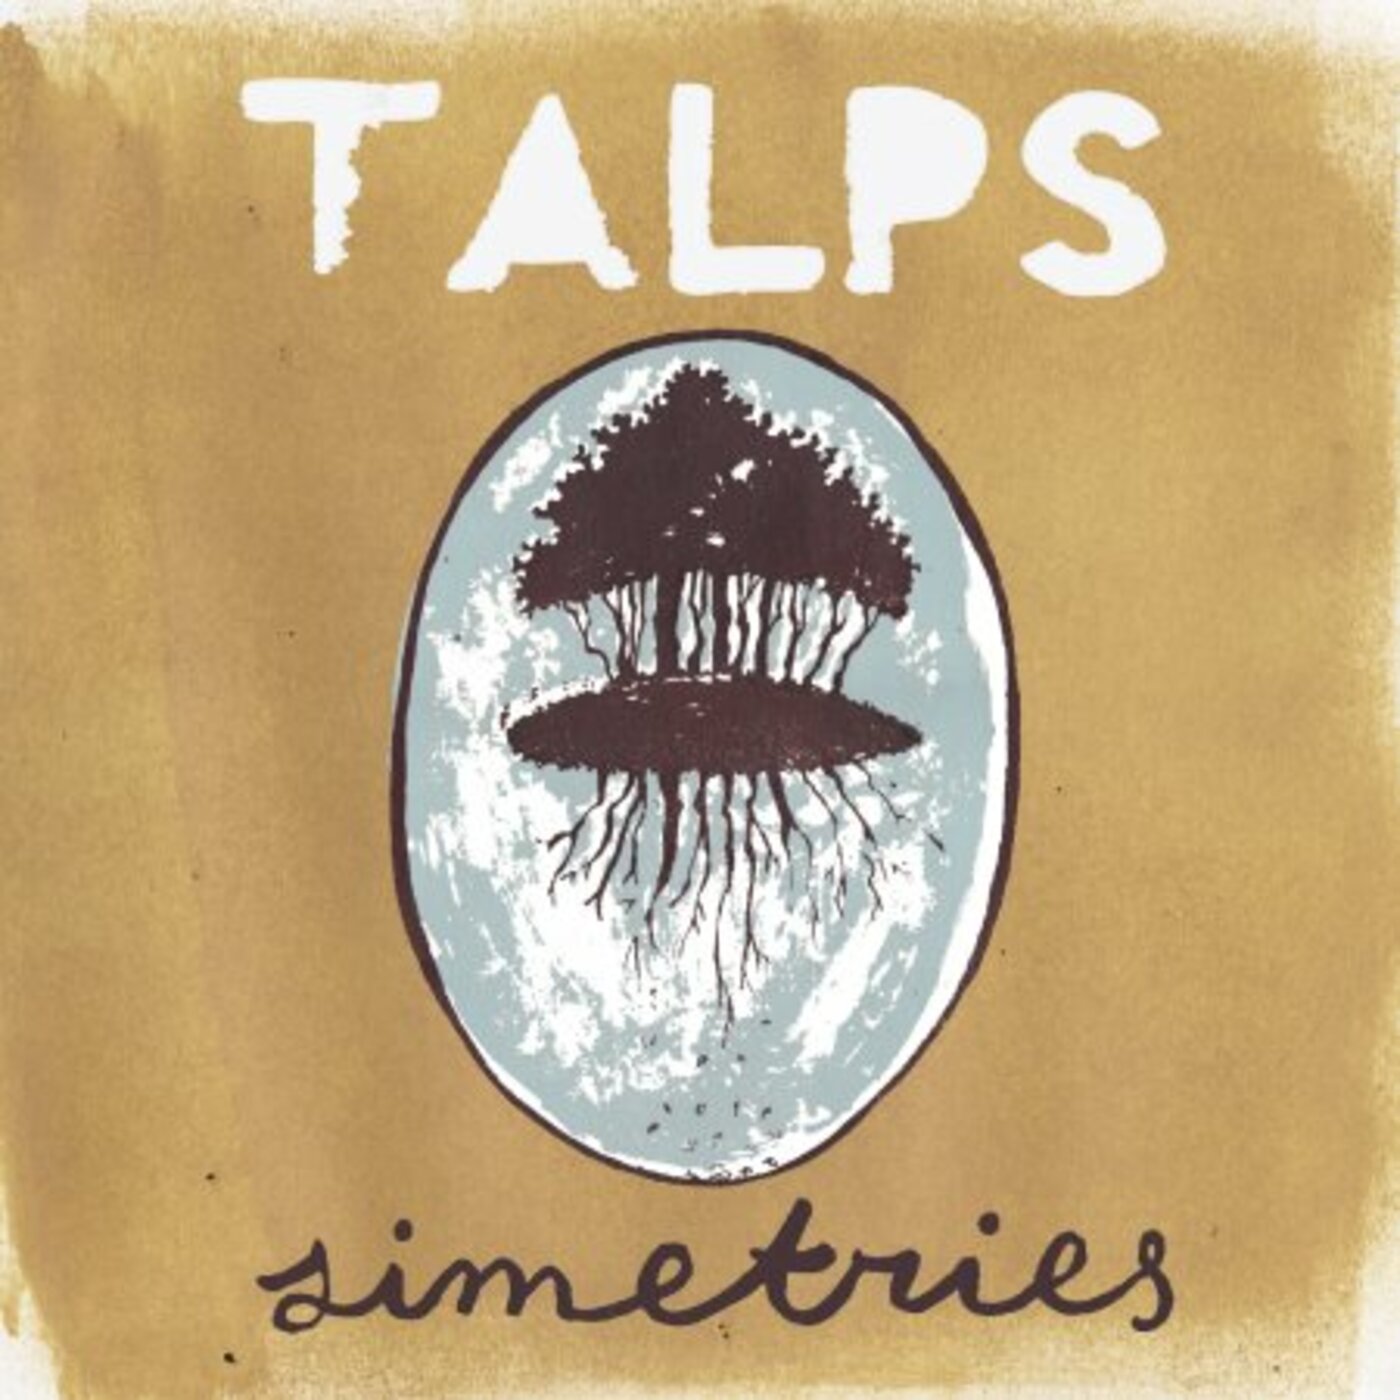 Talps - Simetries | musica en valencià